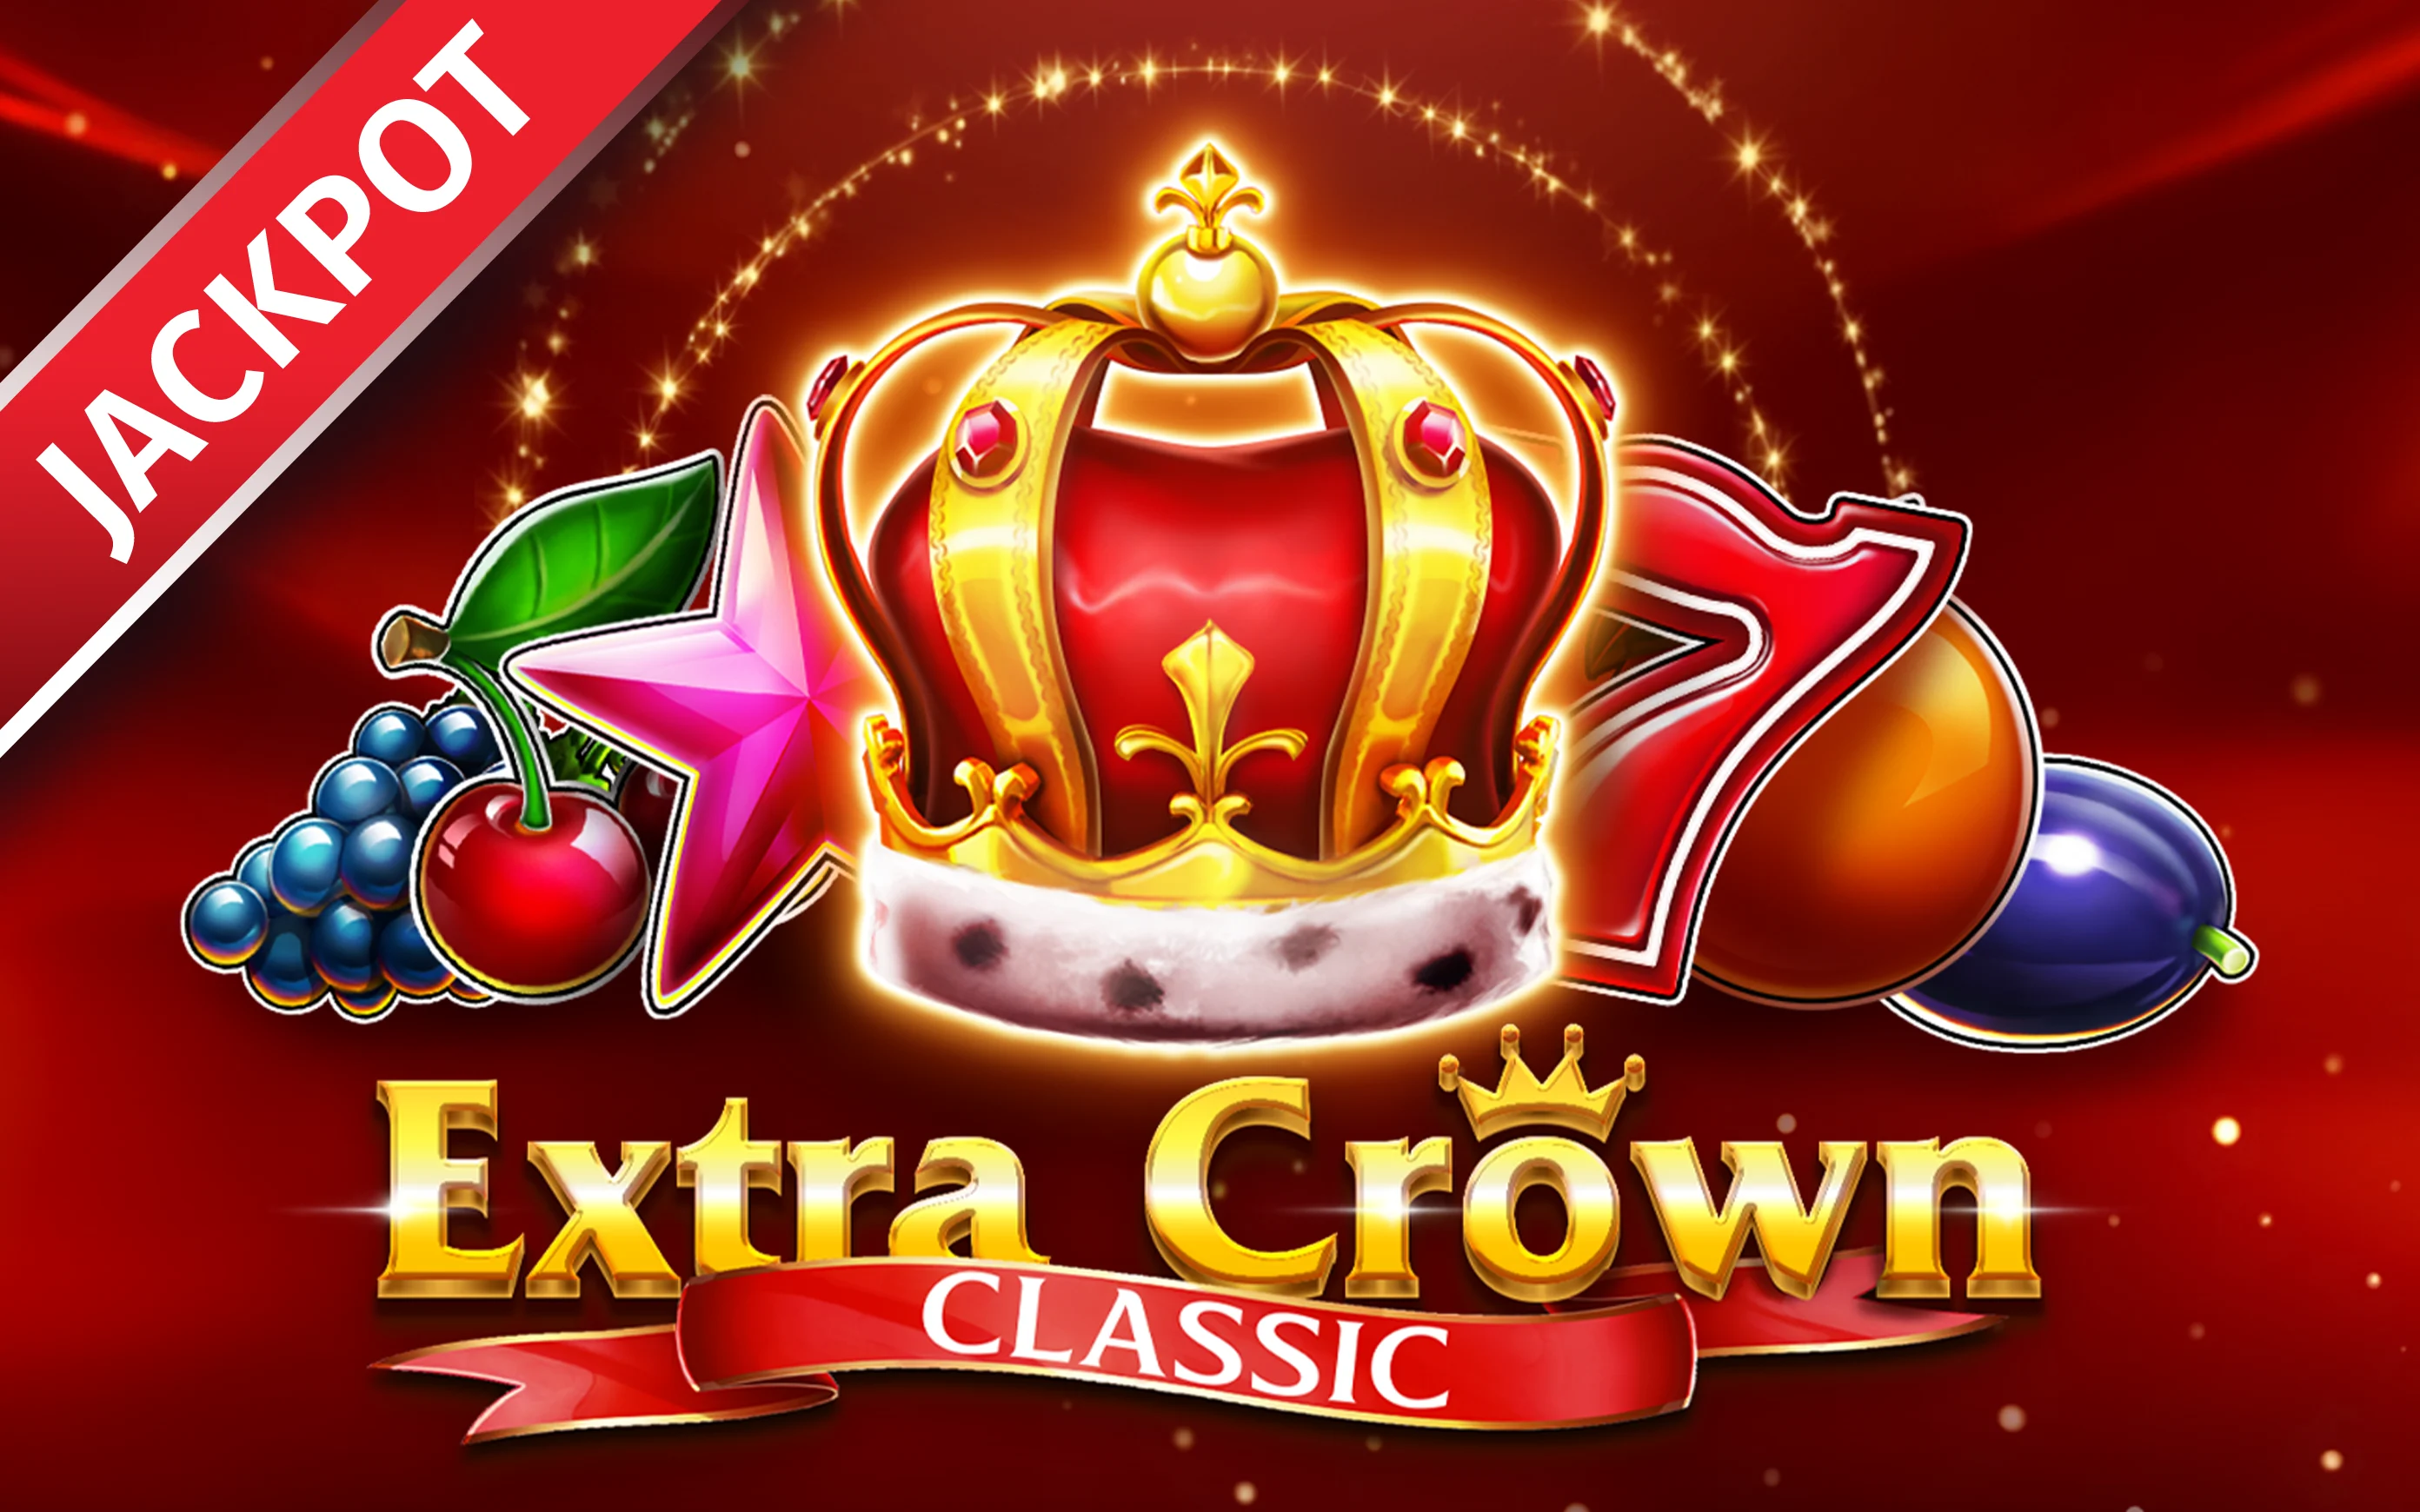 Zagraj w Extra Crown Classic w kasynie online Starcasino.be